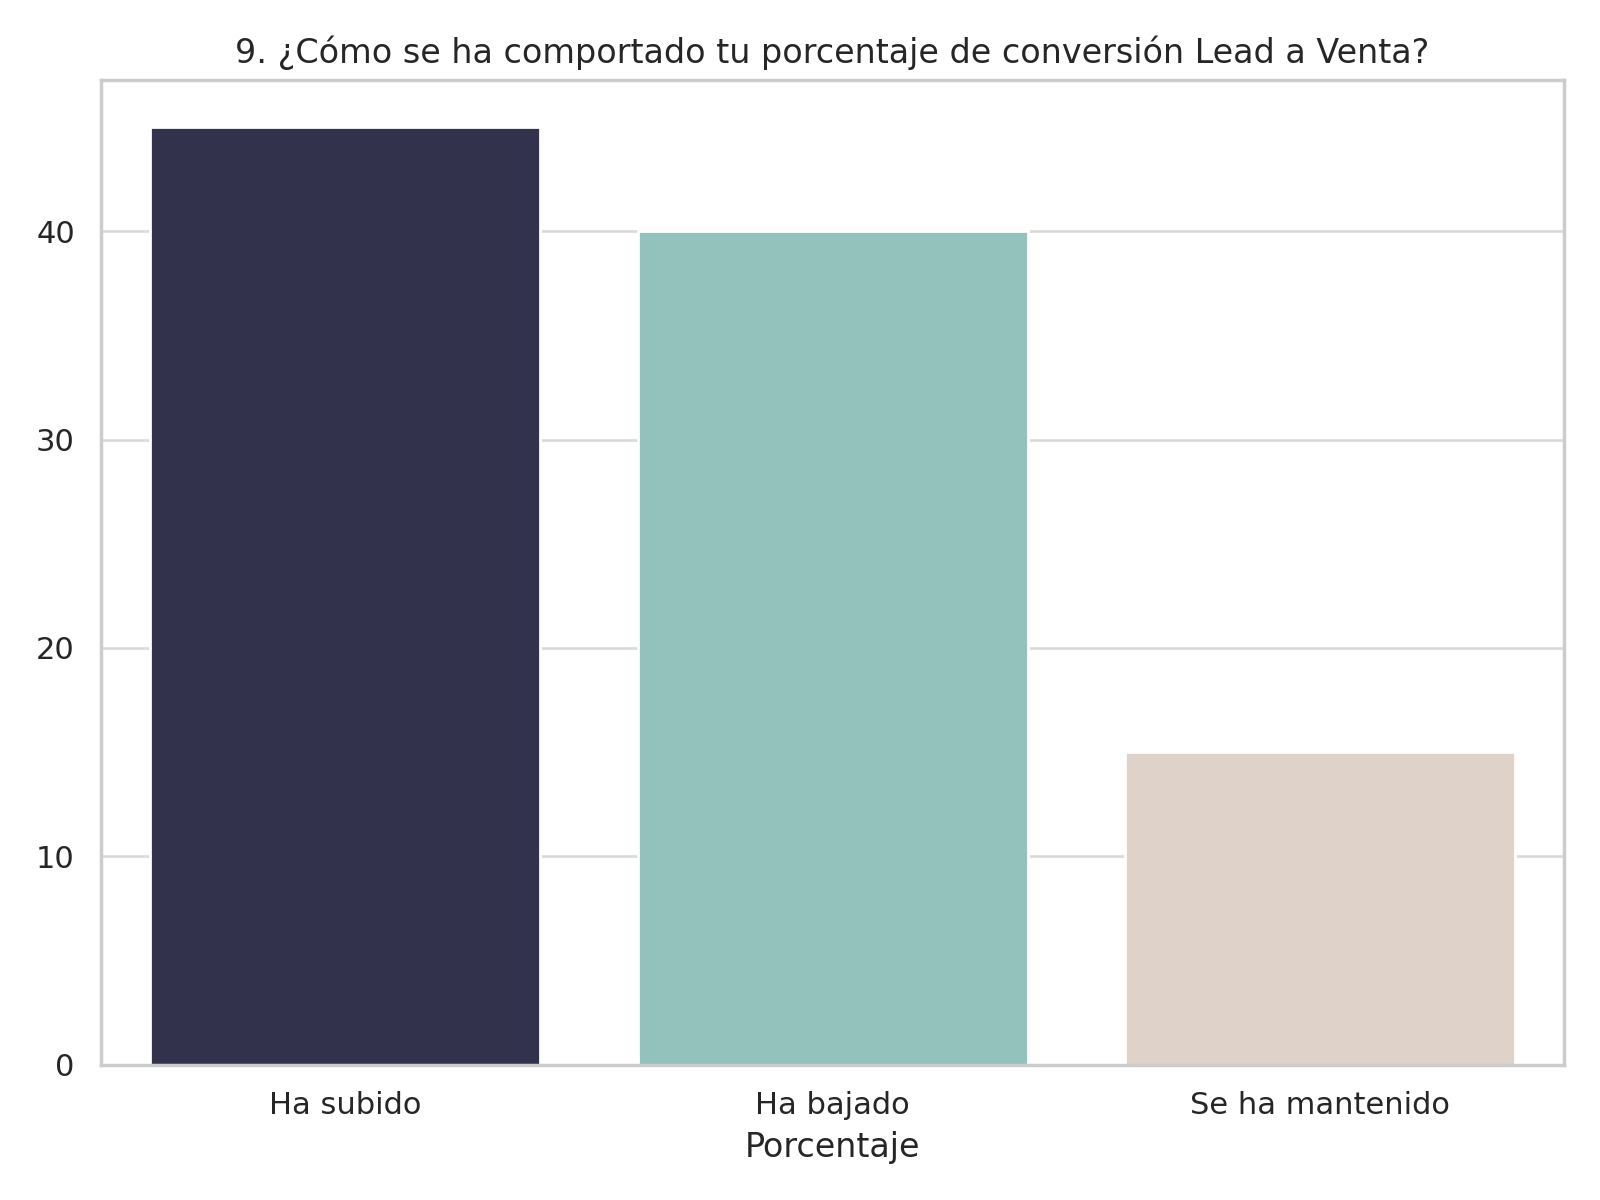 Análisis de porcentajes de conversión de lead a venta